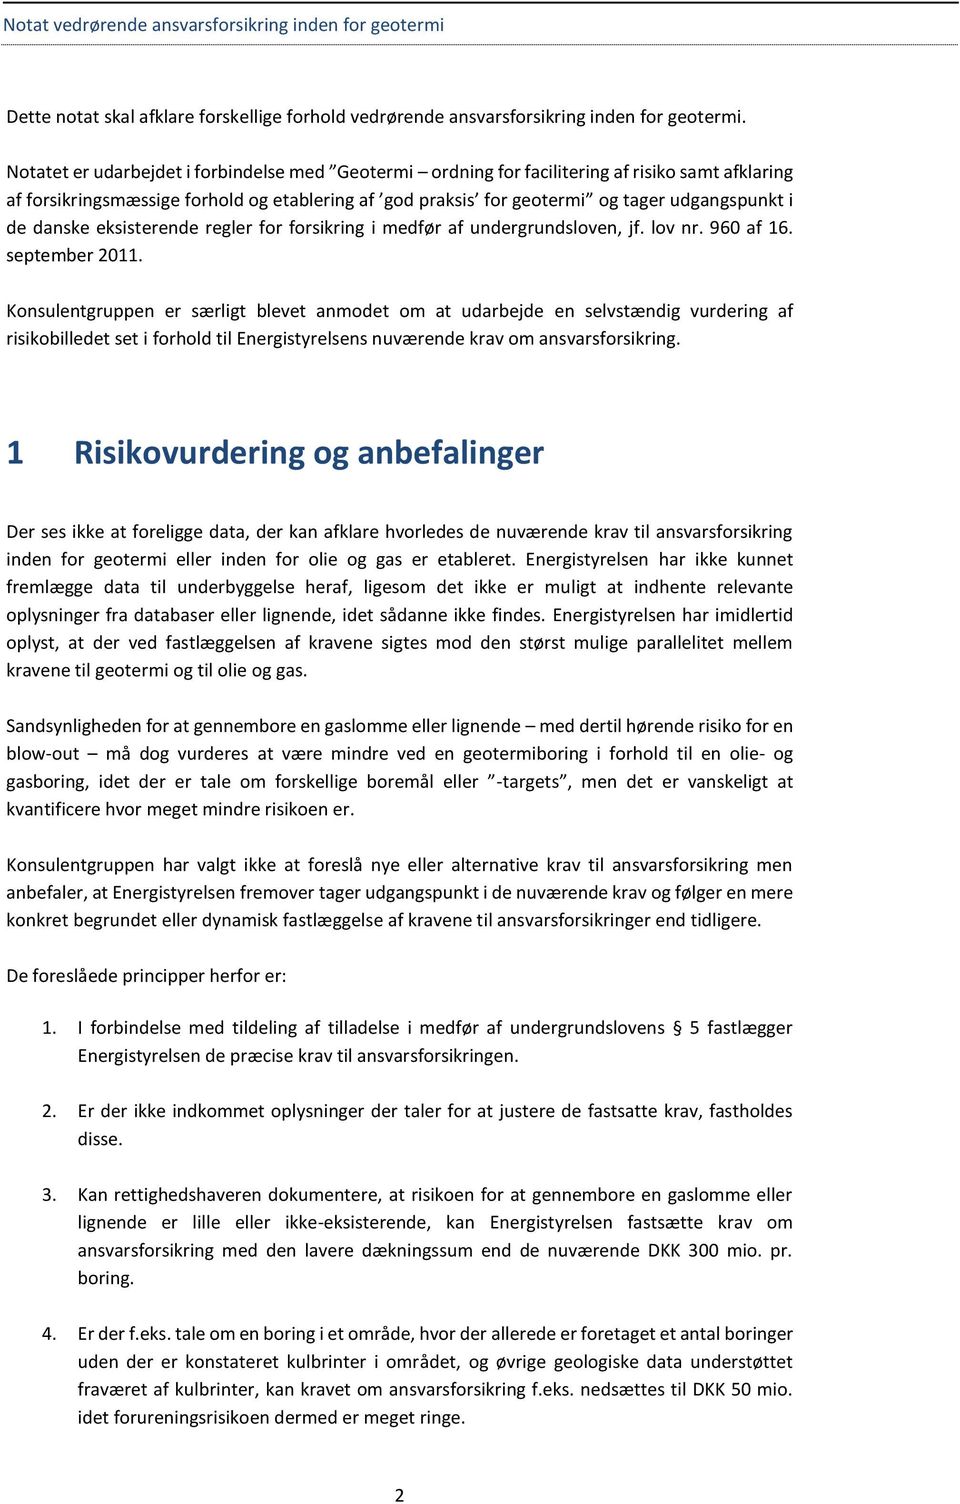 danske eksisterende regler for forsikring i medfør af undergrundsloven, jf. lov nr. 960 af 16. september 2011.